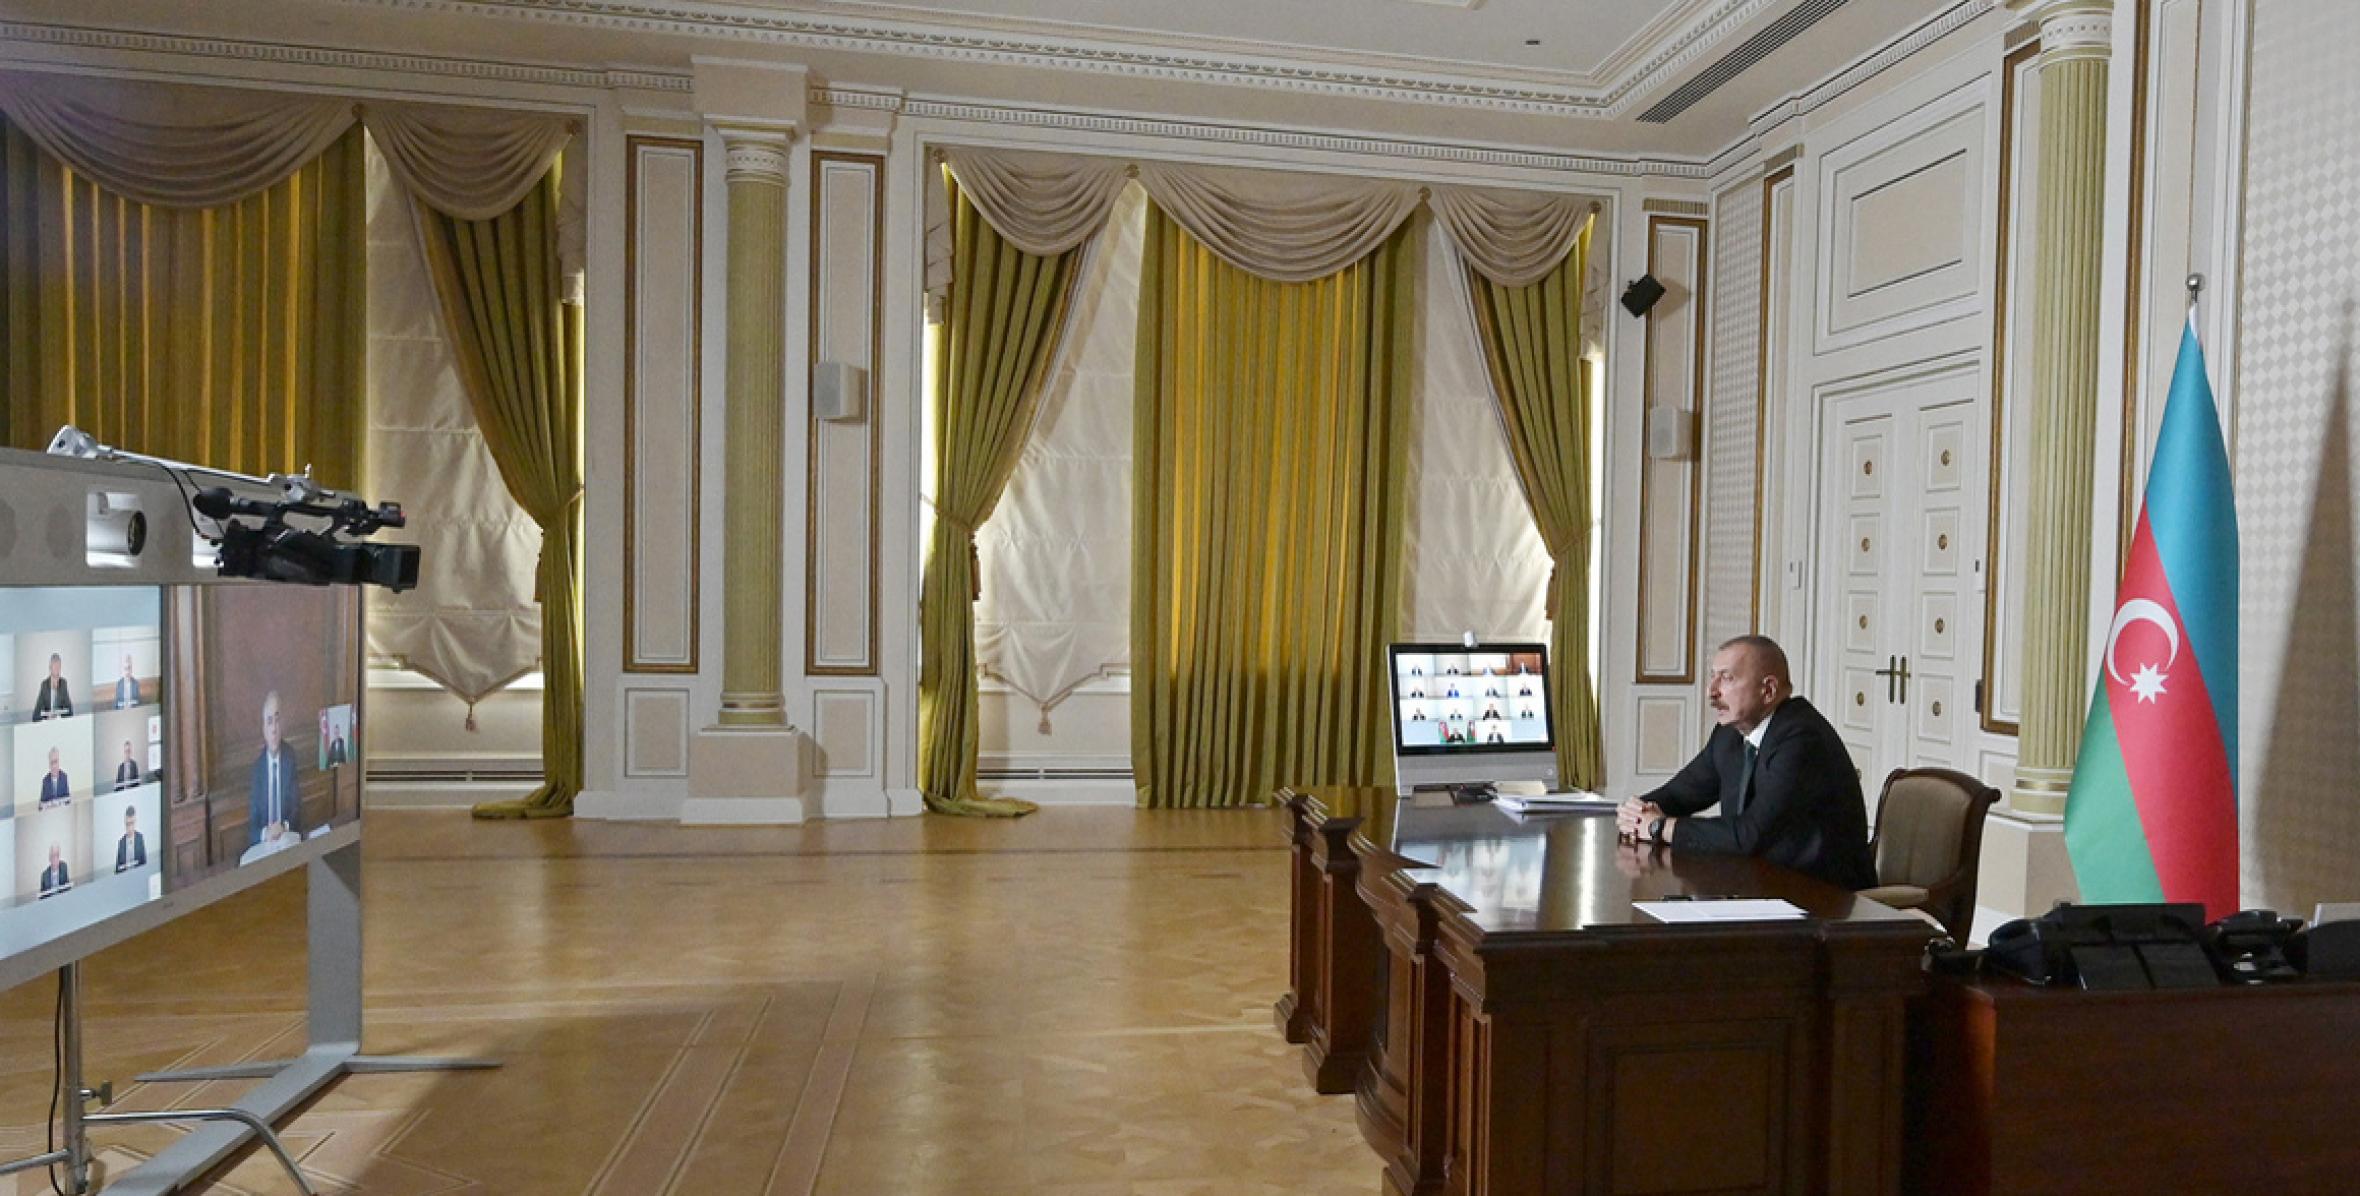 Вступительная речь Ильхама Алиева  на совещании  посвященное состоянию водного хозяйства